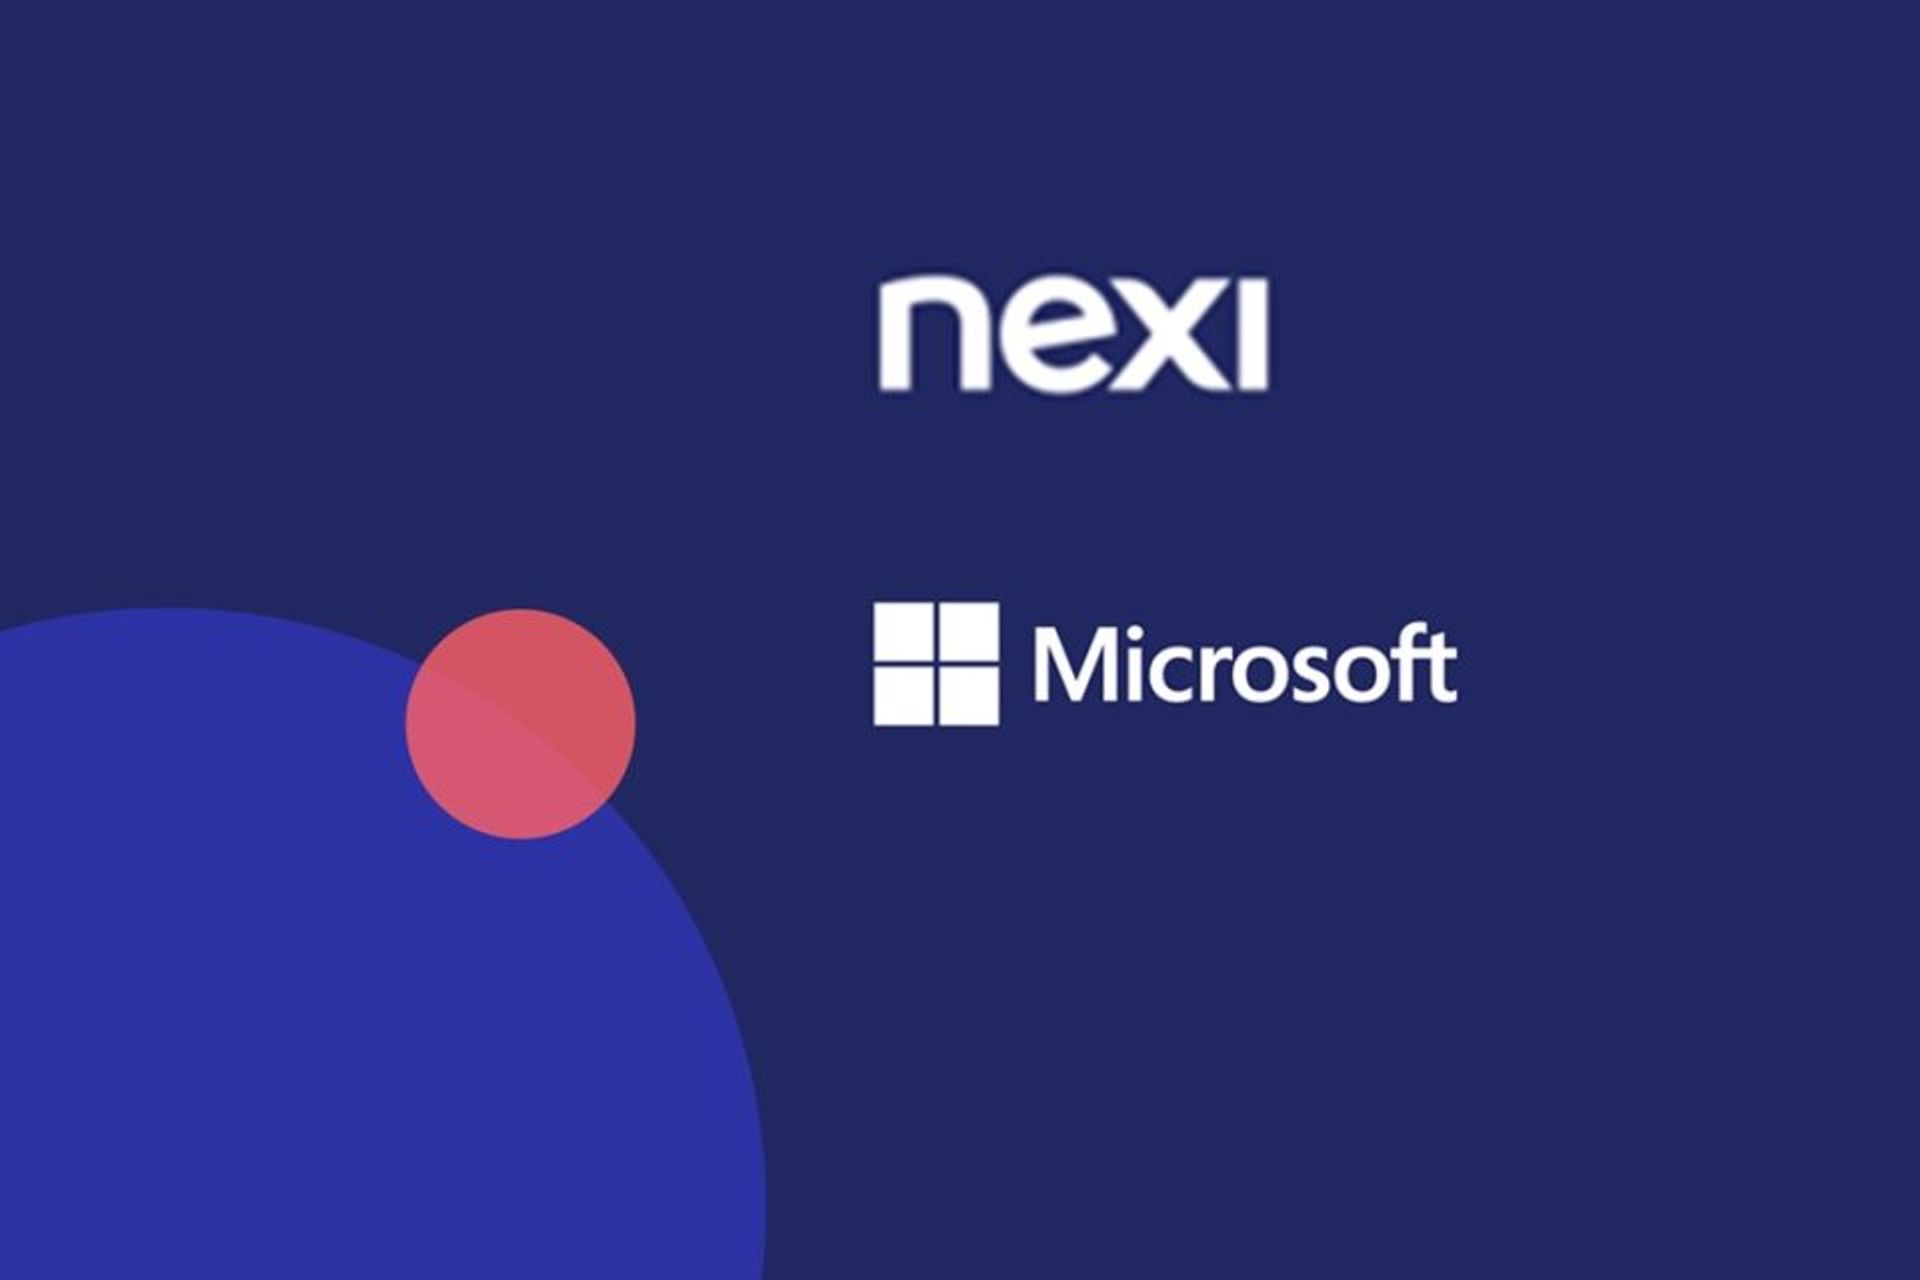 Νέα συνεργασία μεταξύ της Nexi, μιας ευρωπαϊκής paytech που δραστηριοποιείται σε διάφορες αγορές, και του κολοσσού ψηφιοποίησης Microsoft